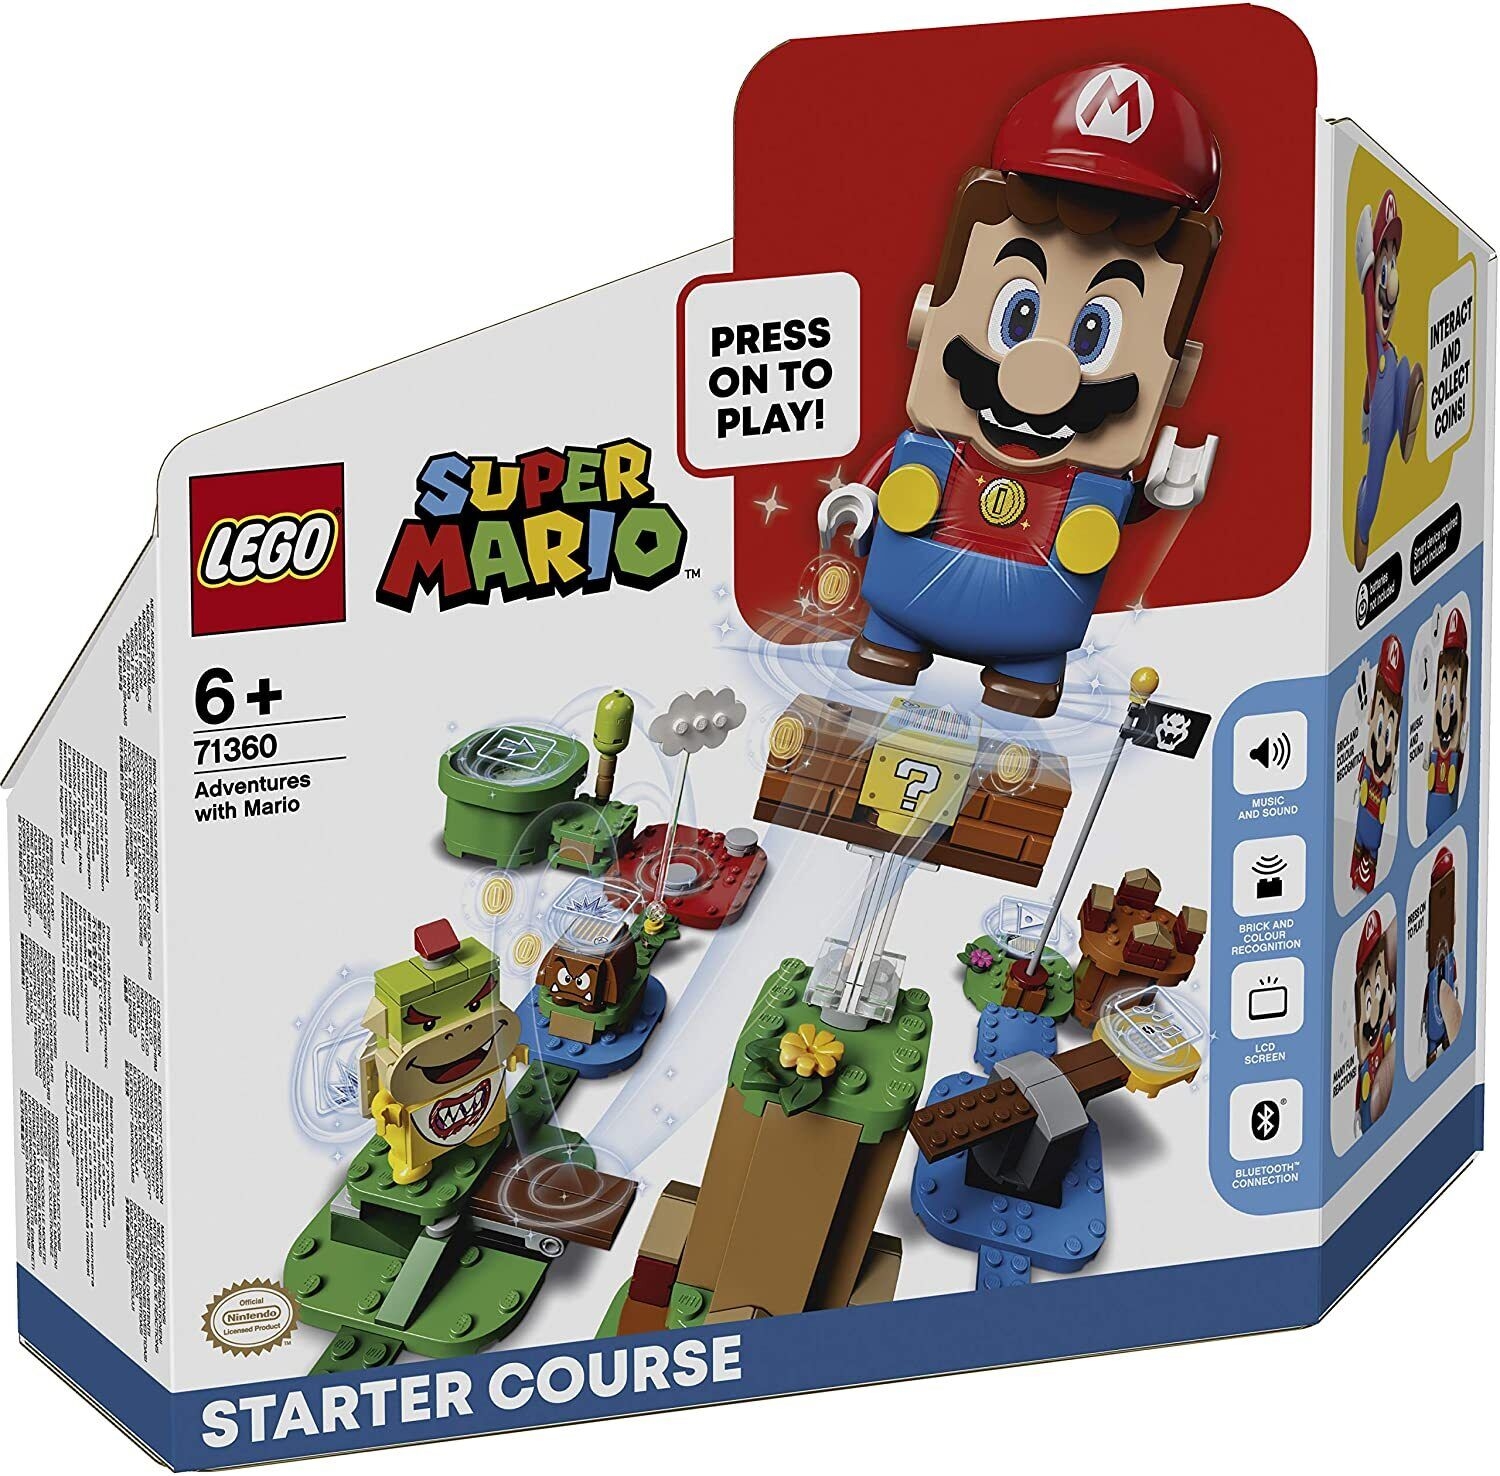 Lego Super Mario Adventures With Mario Starter Course (71360)